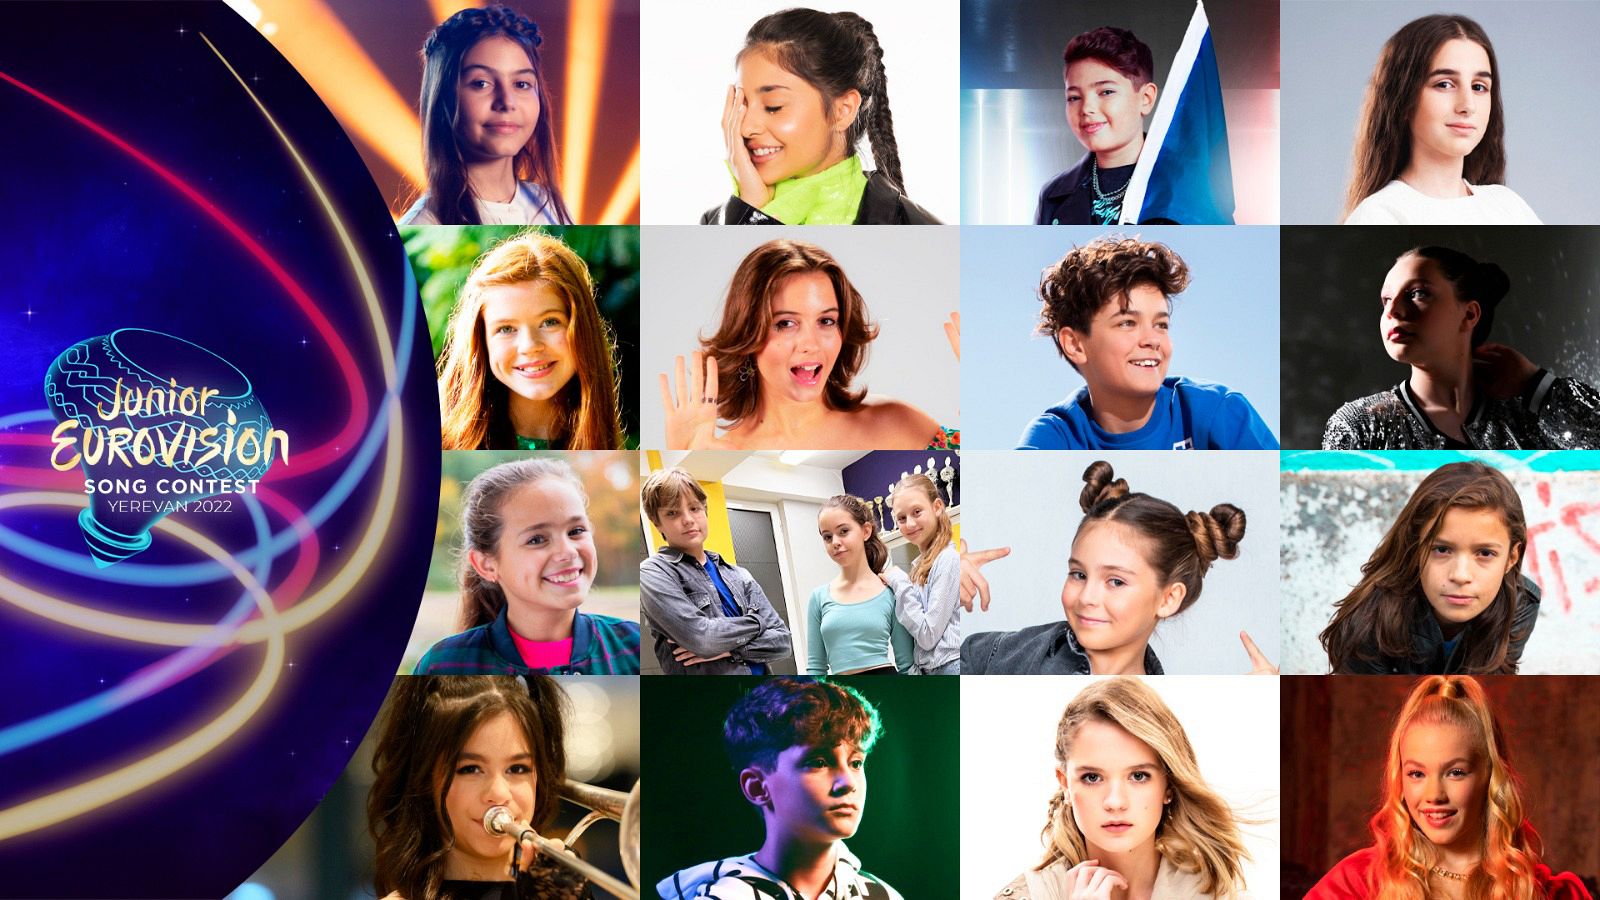 Las 16 canciones de Eurovisión Junior 2022 - Ver ahora